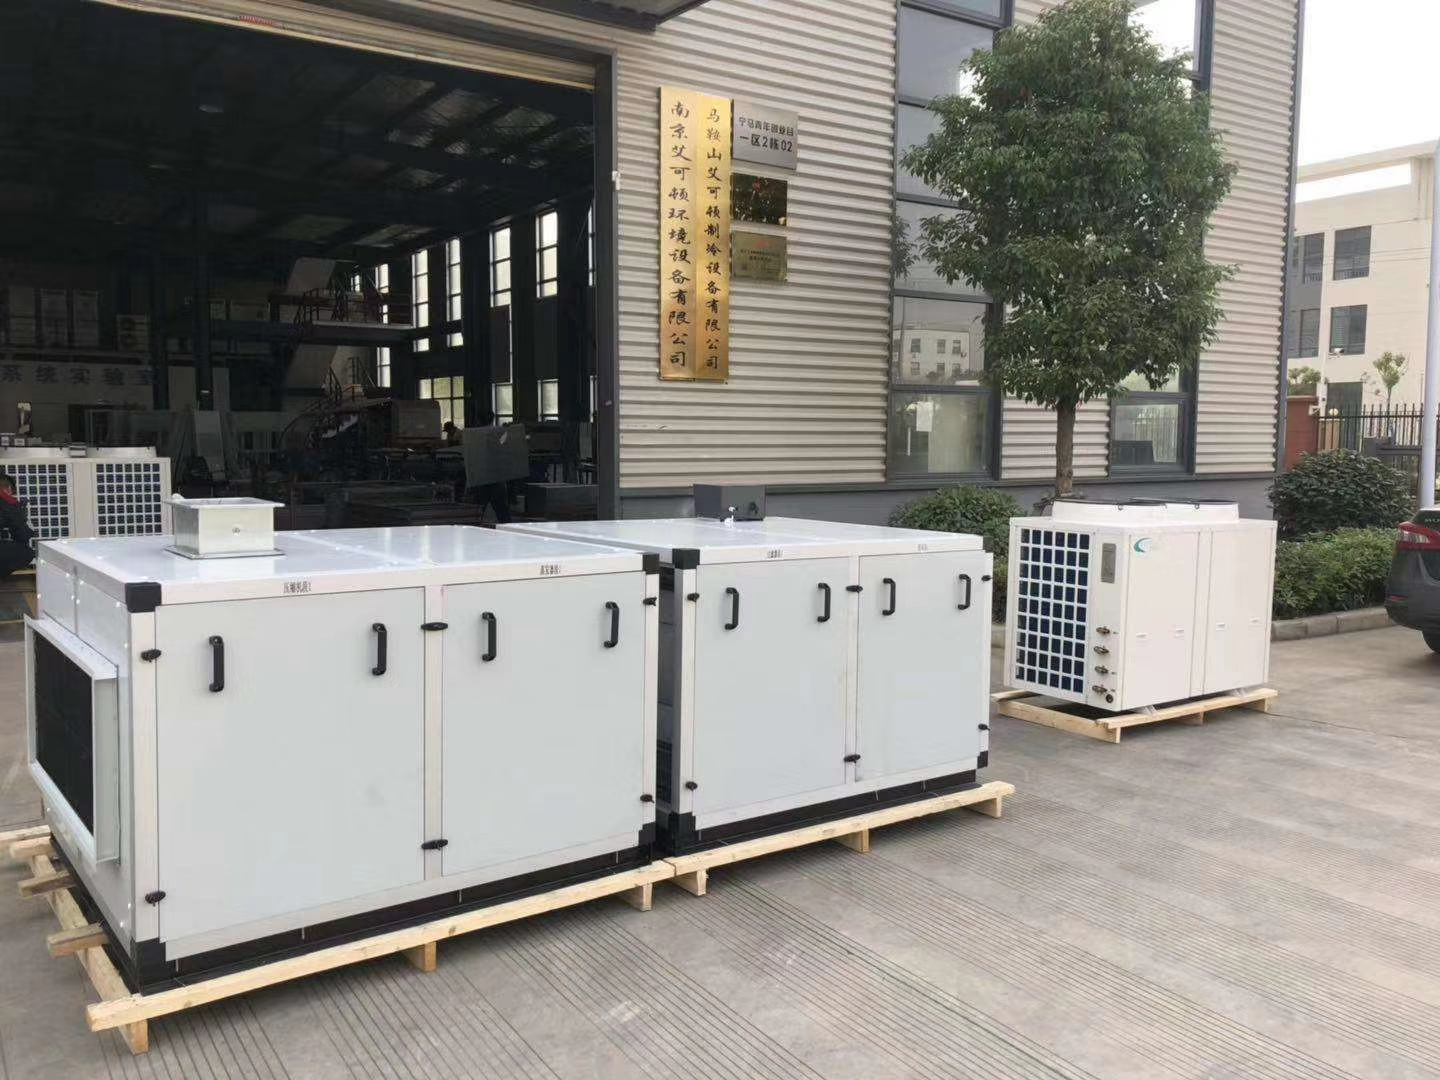 江苏现代组合式净化空调设备制造 值得信赖 南京艾可顿环境设备供应